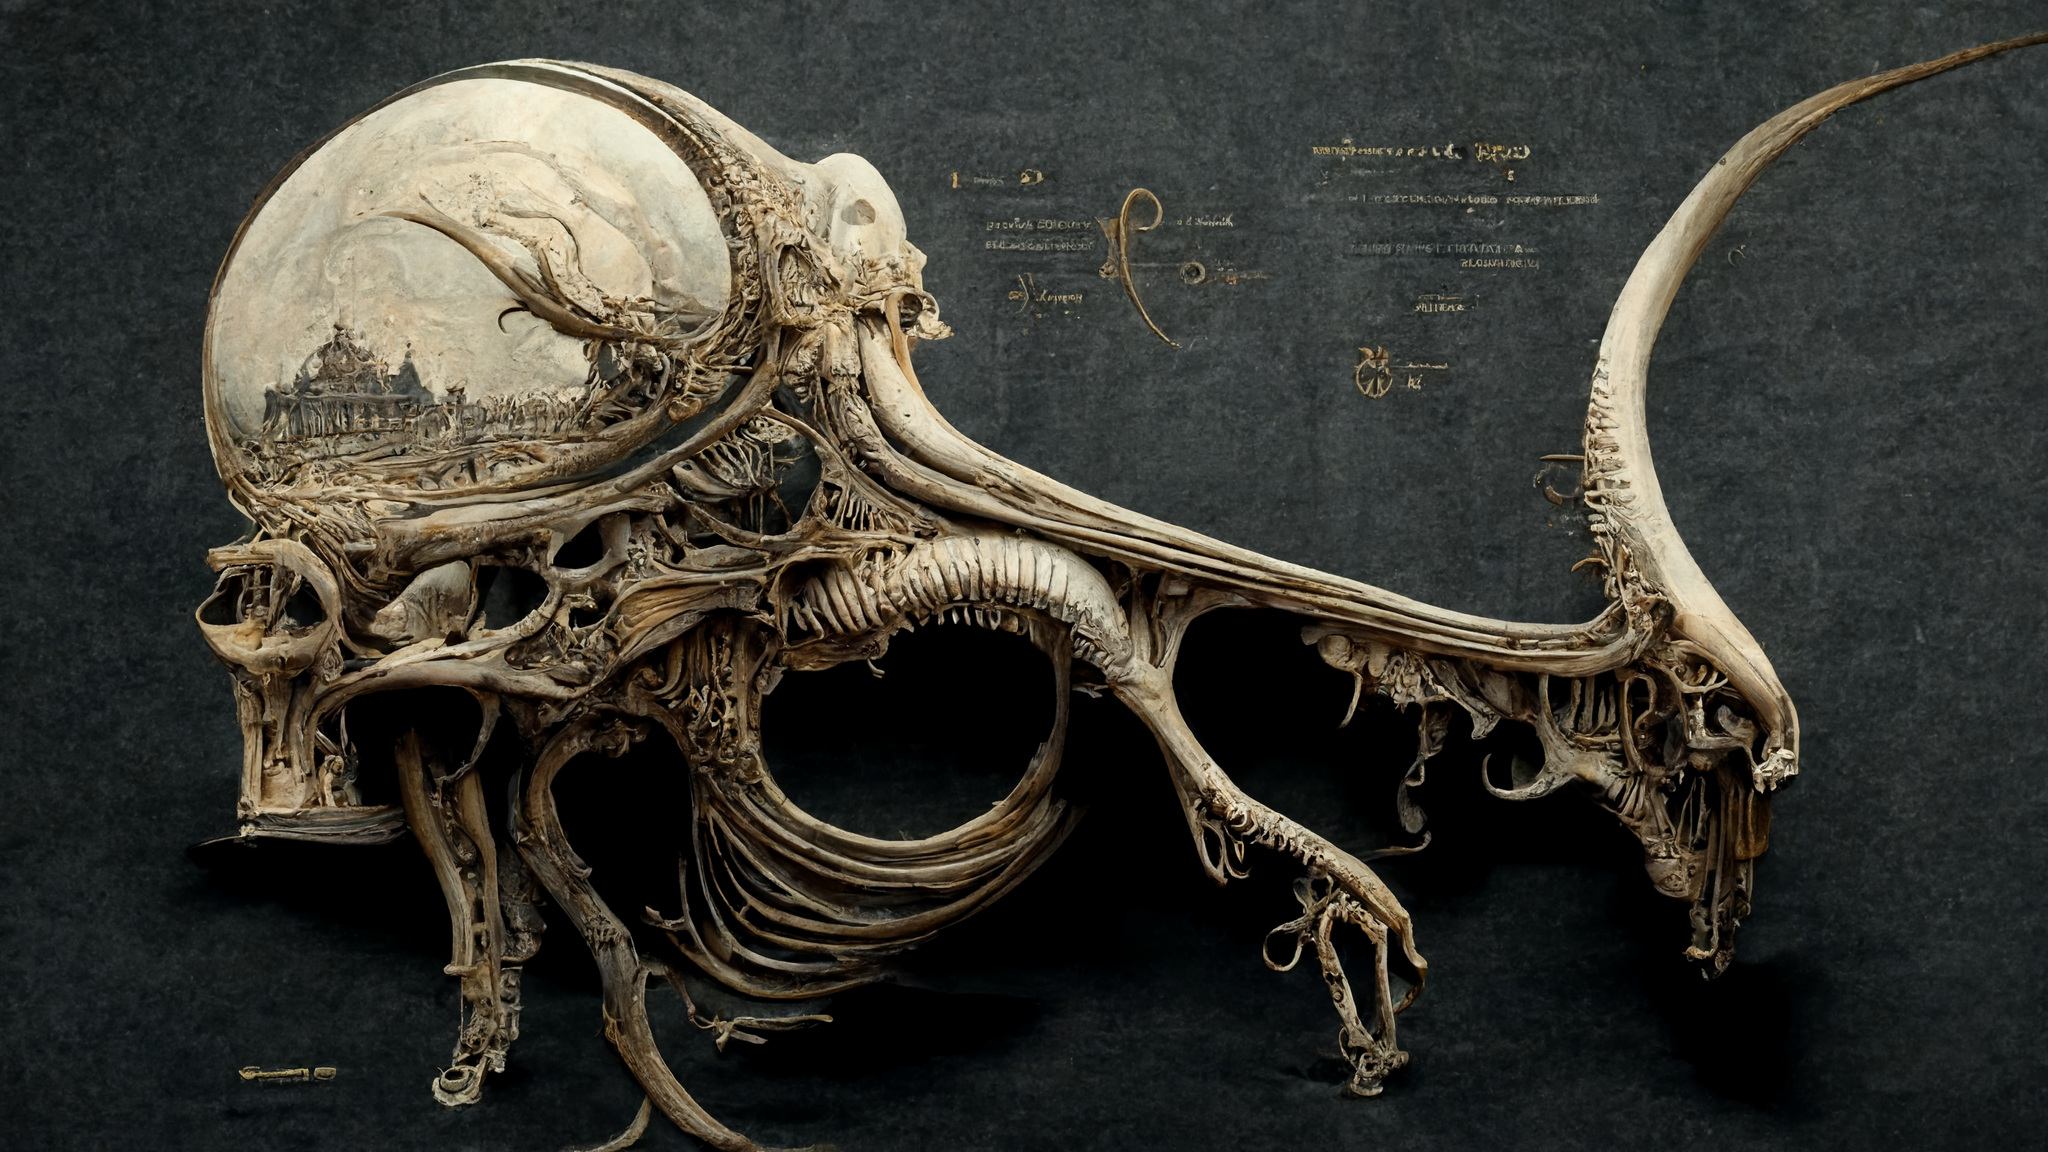 General 2048x1152 digital art anatomy bones surreal artwork fantasy art